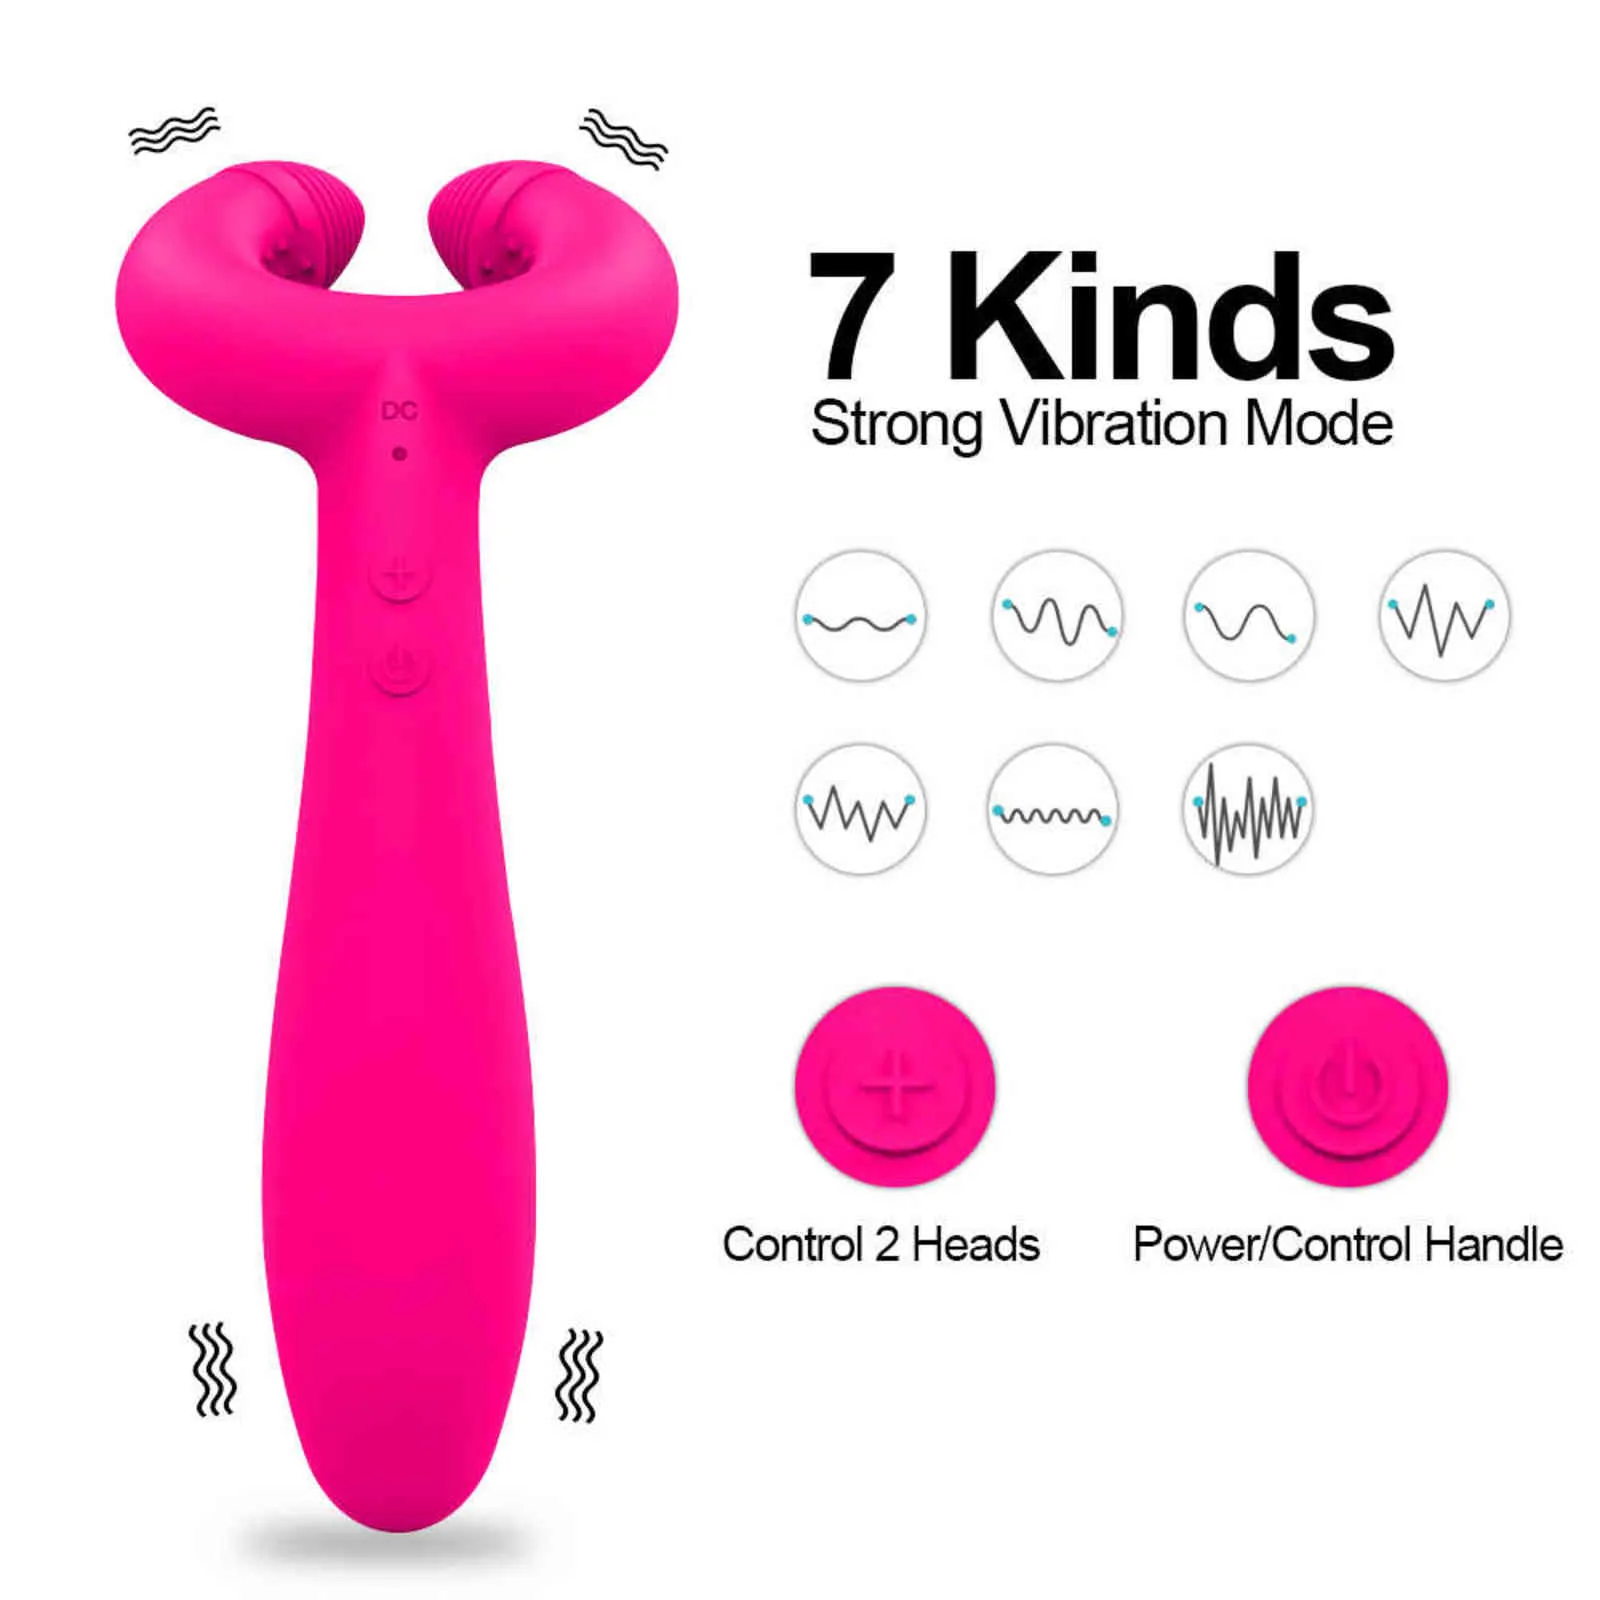 Nxy vibrators dubbele penetratie 3 motoren dildo vibrator sex speelgoed voor vrouwen